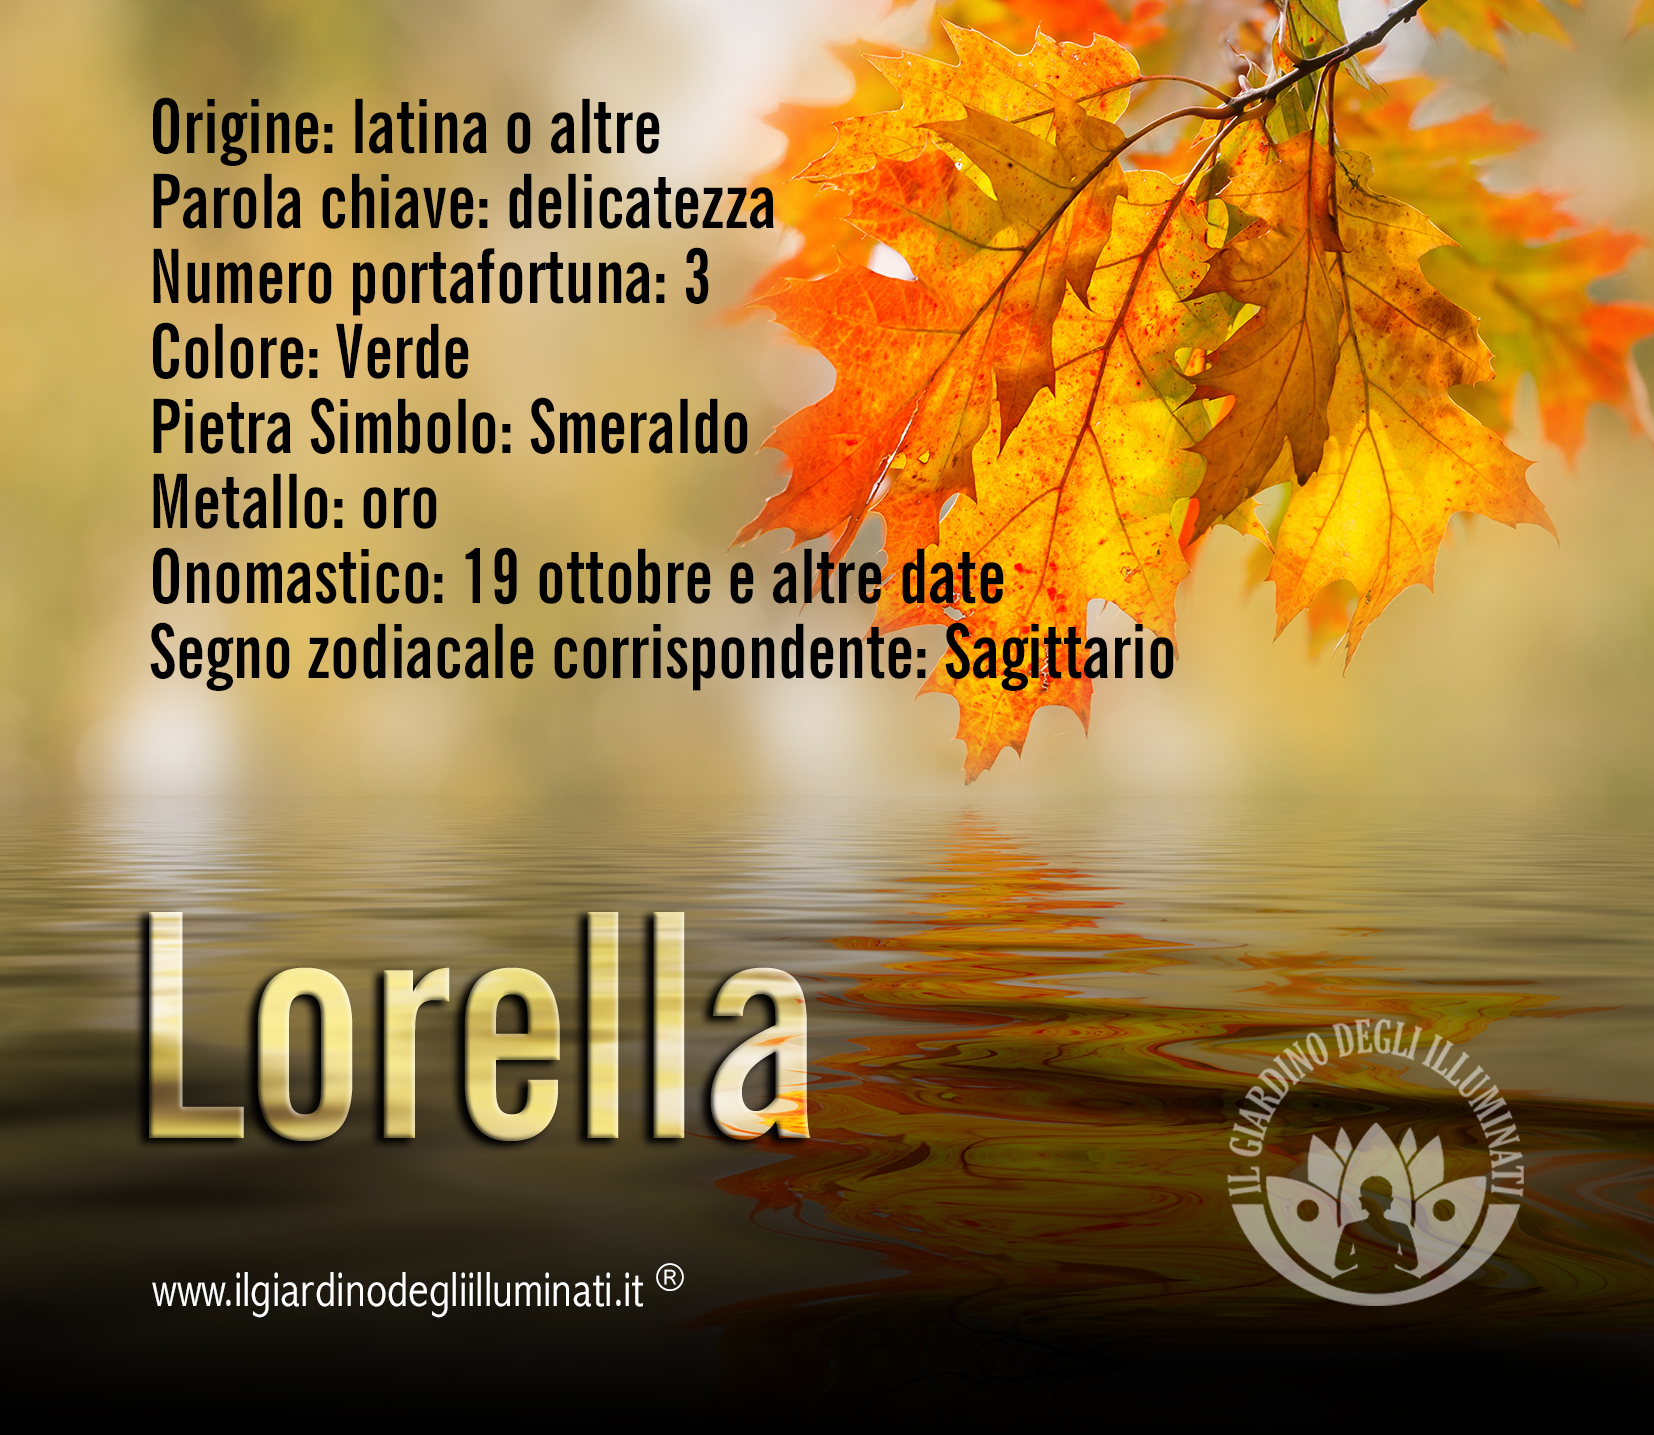 Lorella significato e origine